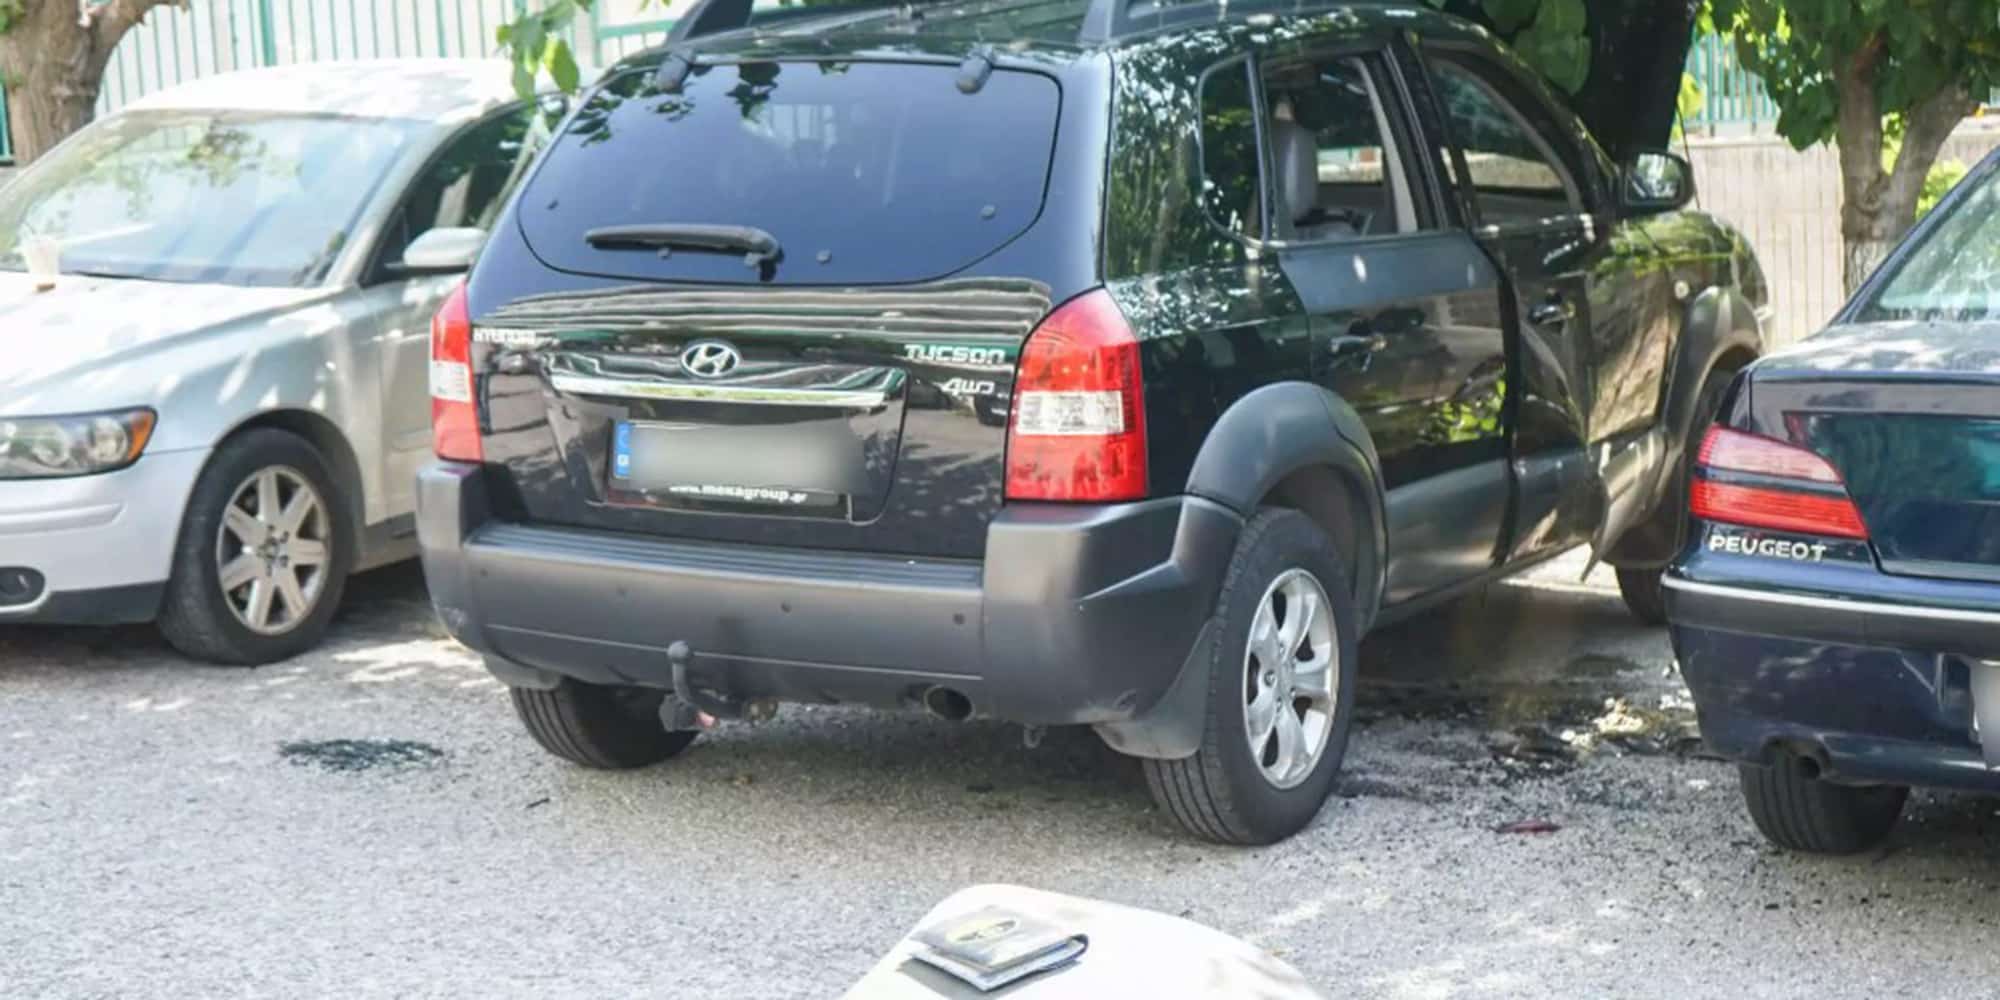 Το αυτοκίνητο που δέχτηκε επίθεση στο Χαϊδάρι